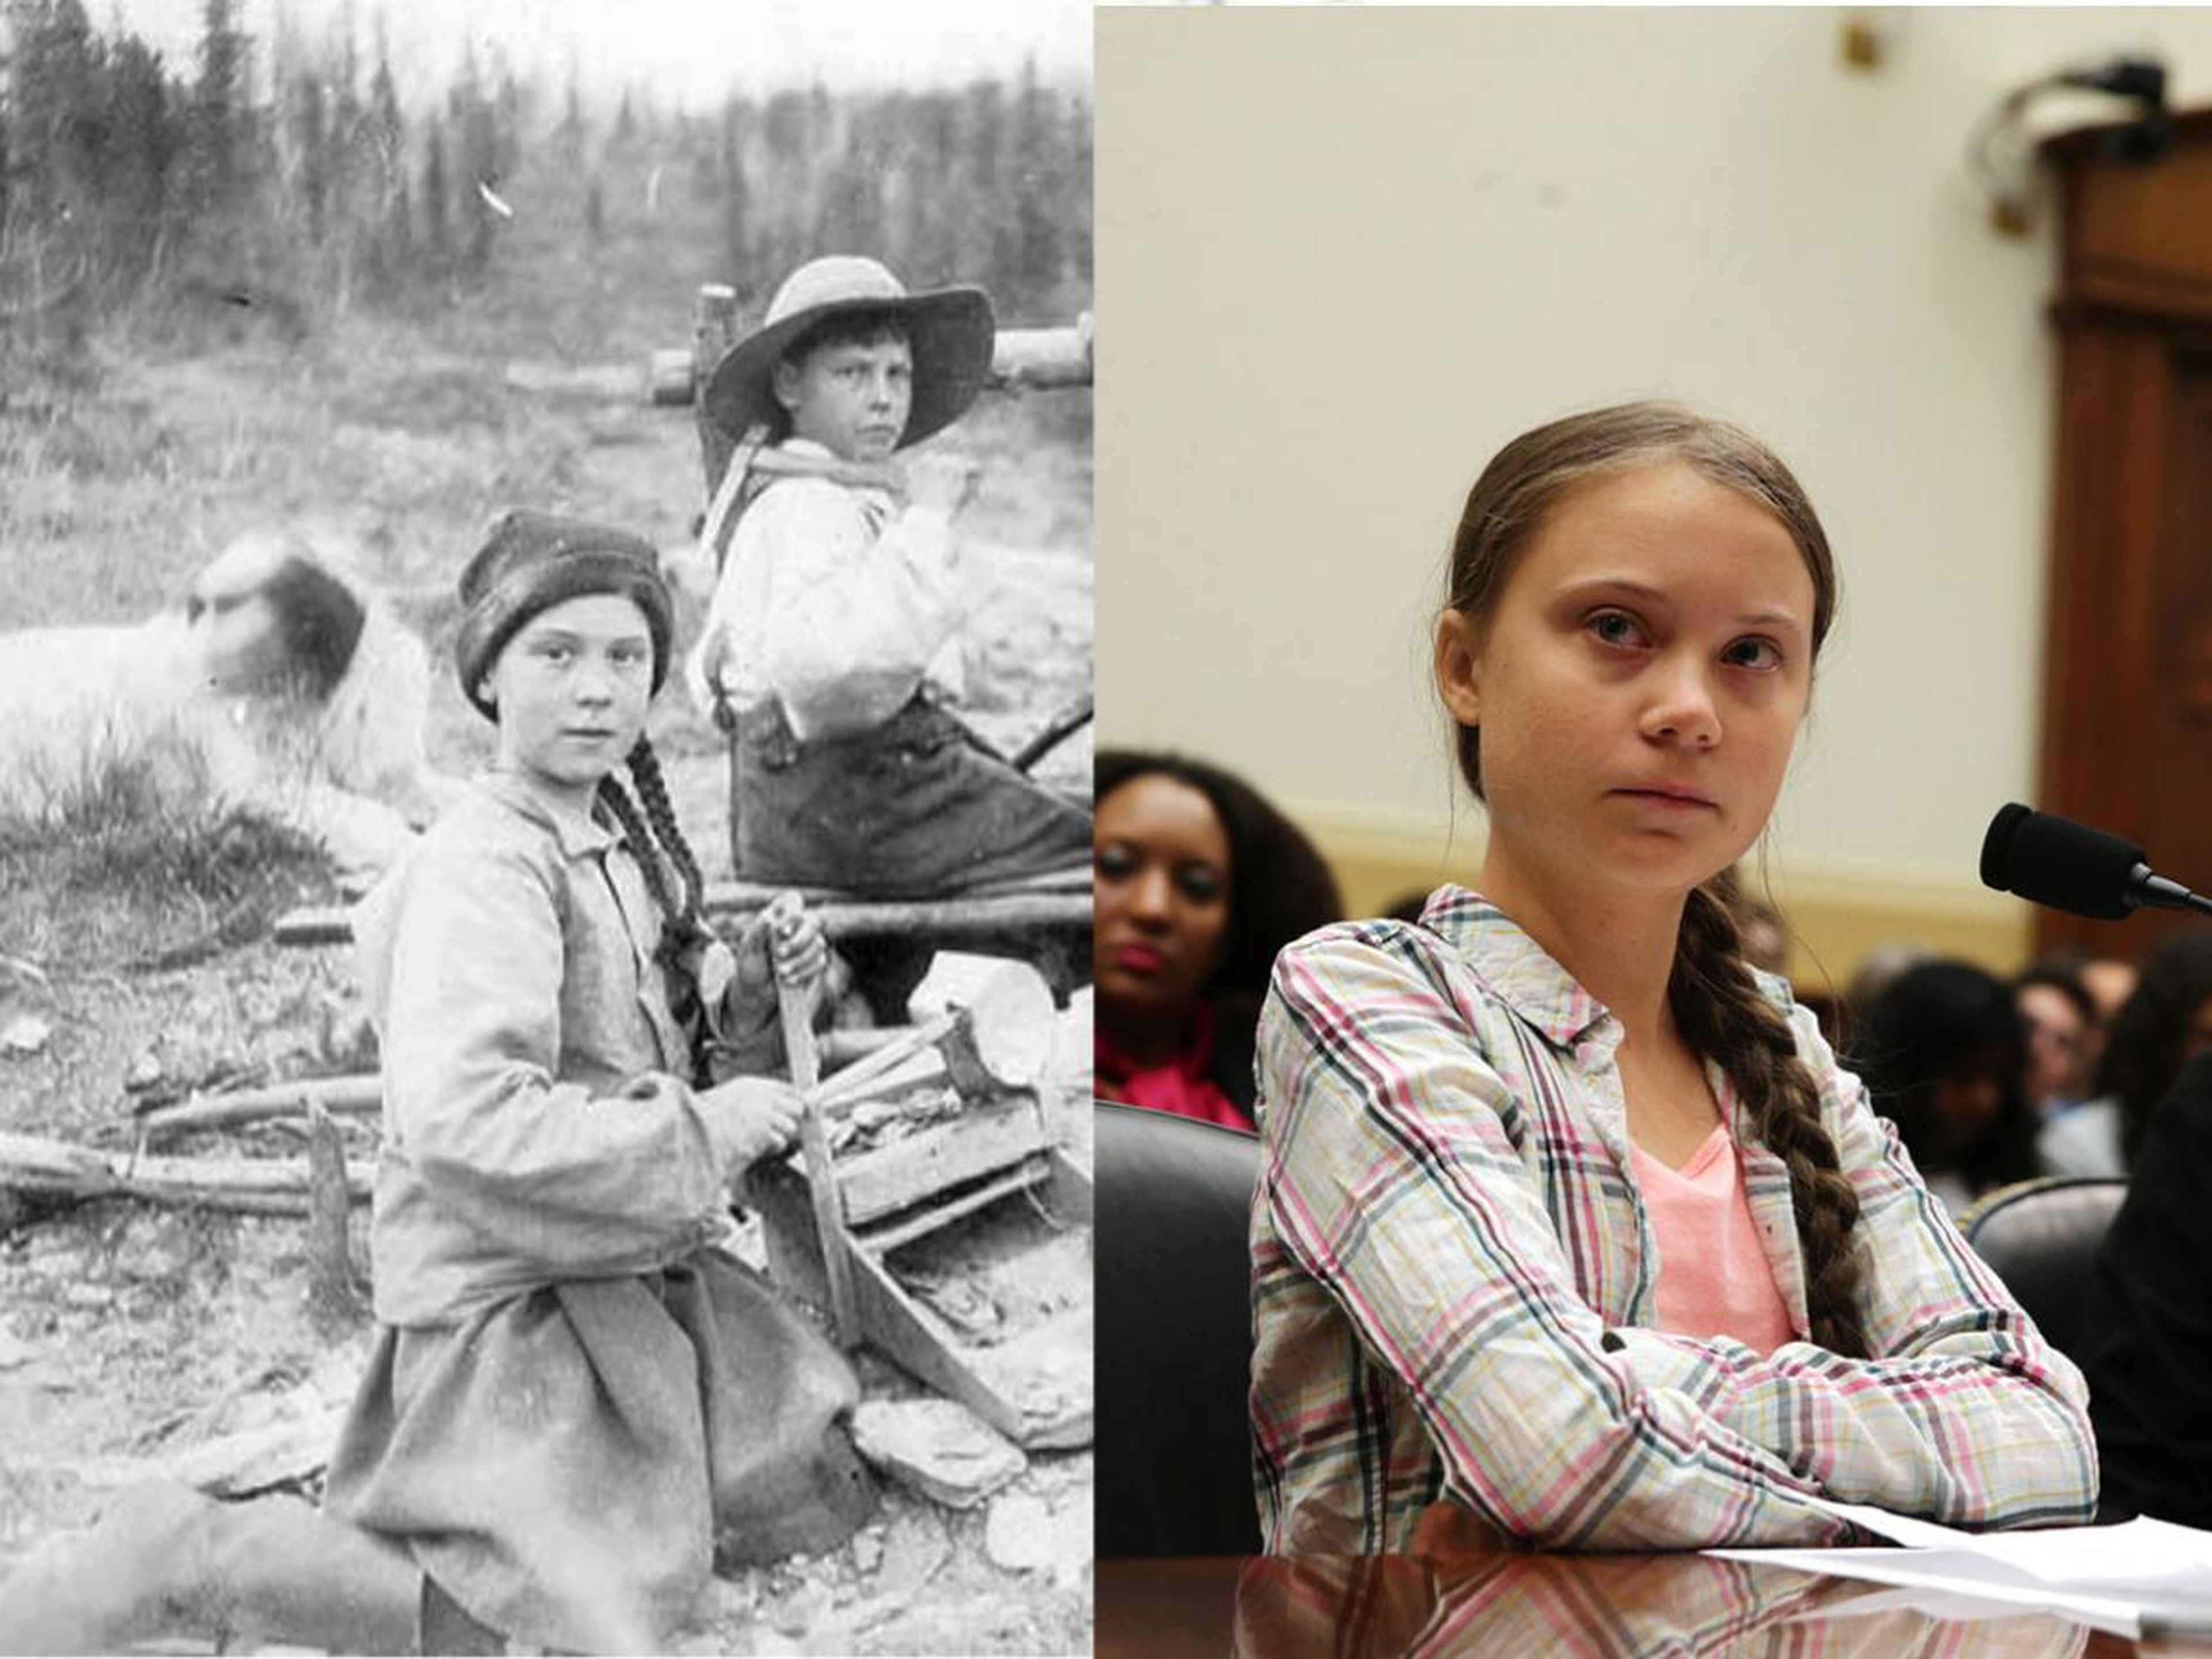 La activista climática sueca de 16 años Greta Thunberg y una foto de 1898 de una chica que se parece a ella.